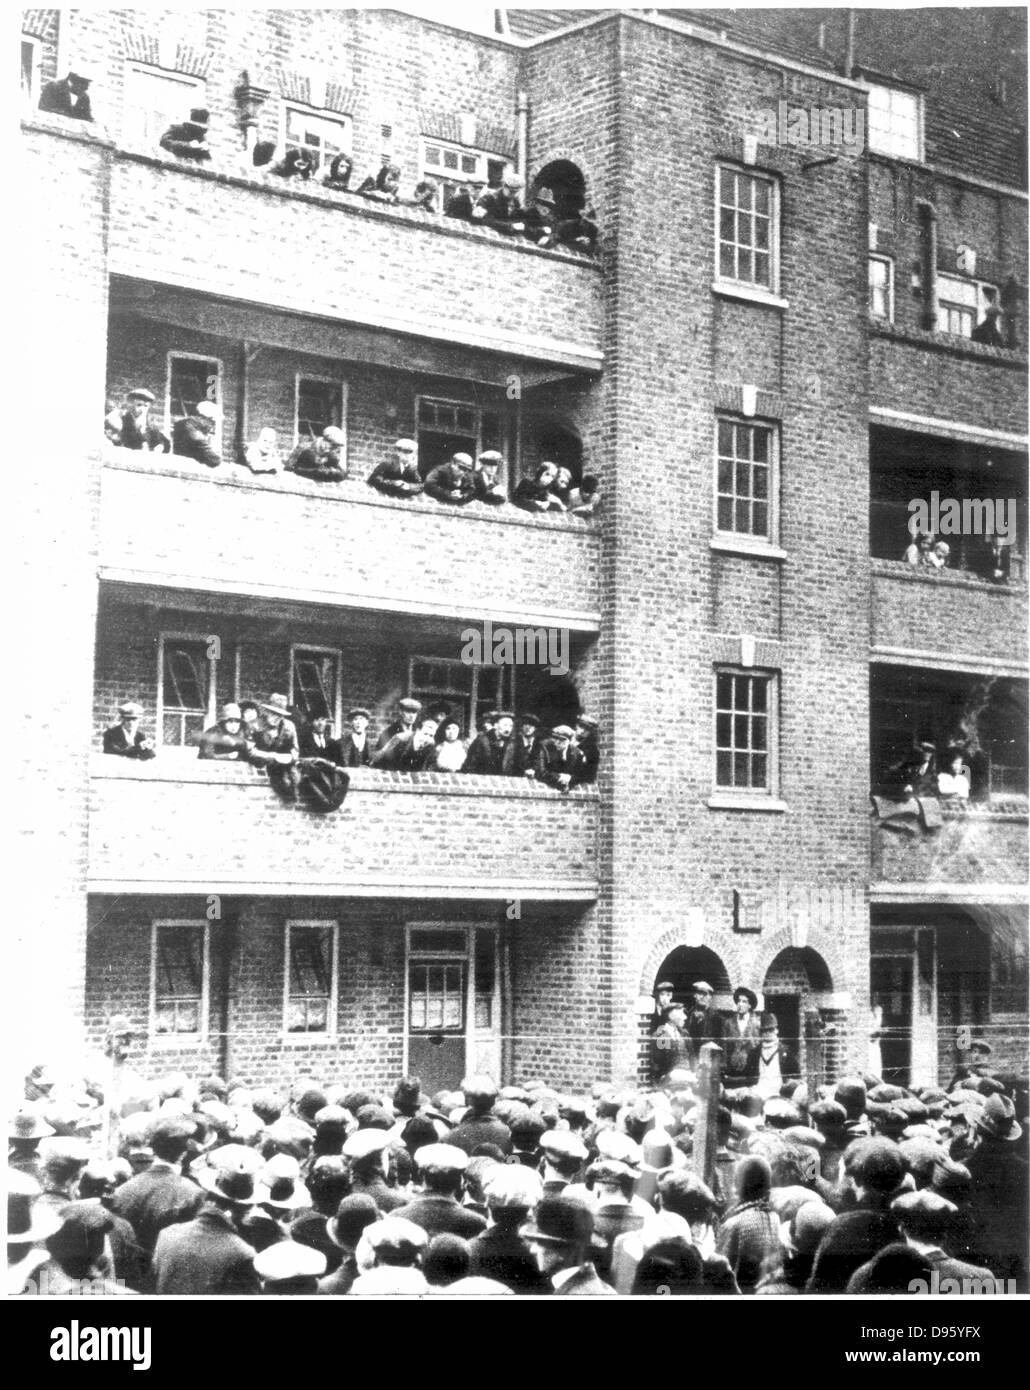 Härte während der Großen Depression in Großbritannien 1929-1936. Szenen in Peckham, London, 1931, als eine Reihe der Armen versahen zusammen mit Räumung für die Nichtzahlung der Rat Preise zu widerstehen. Stockfoto